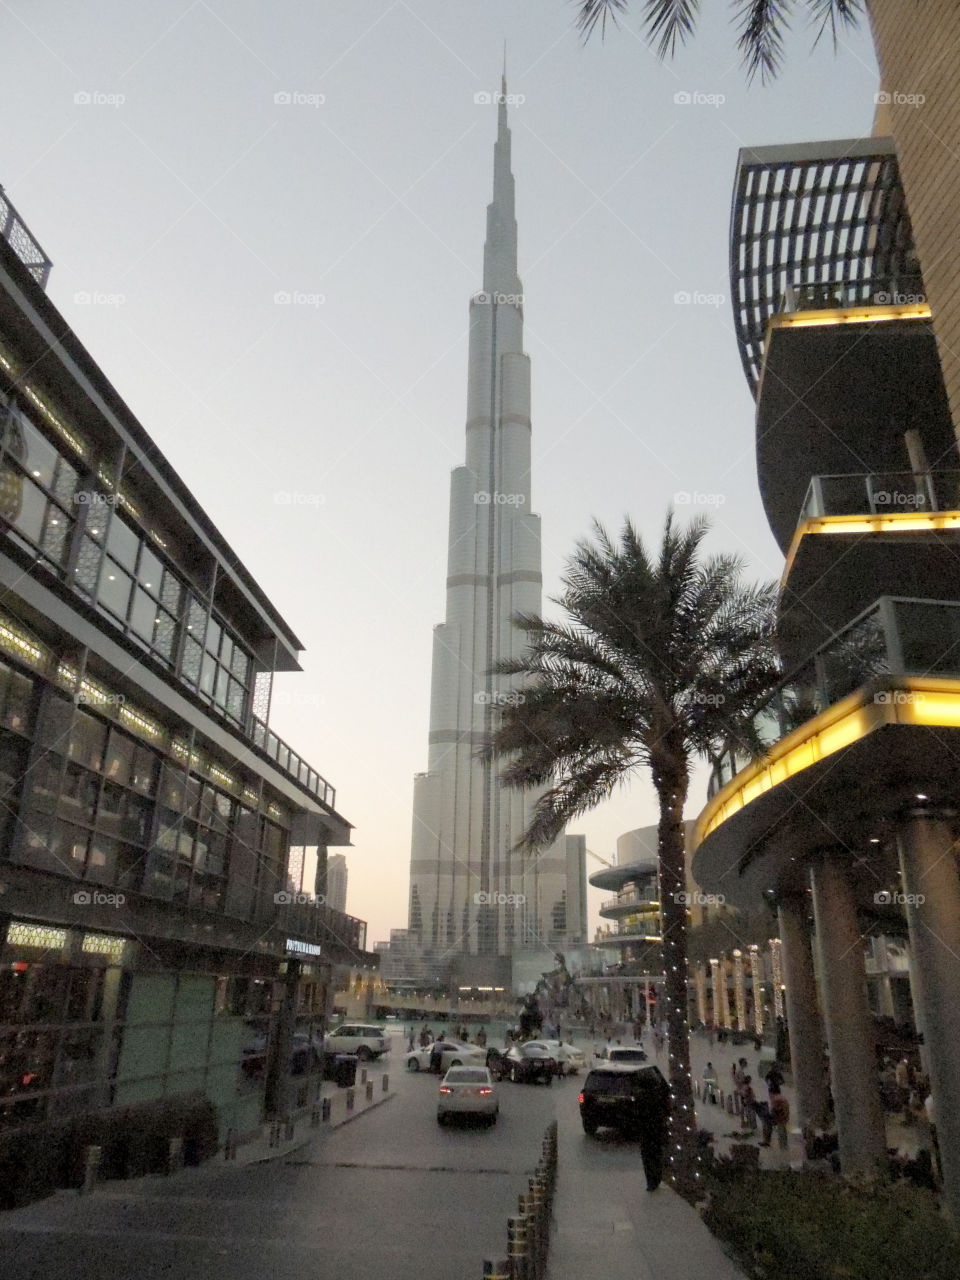 Skyscraper in Dubai